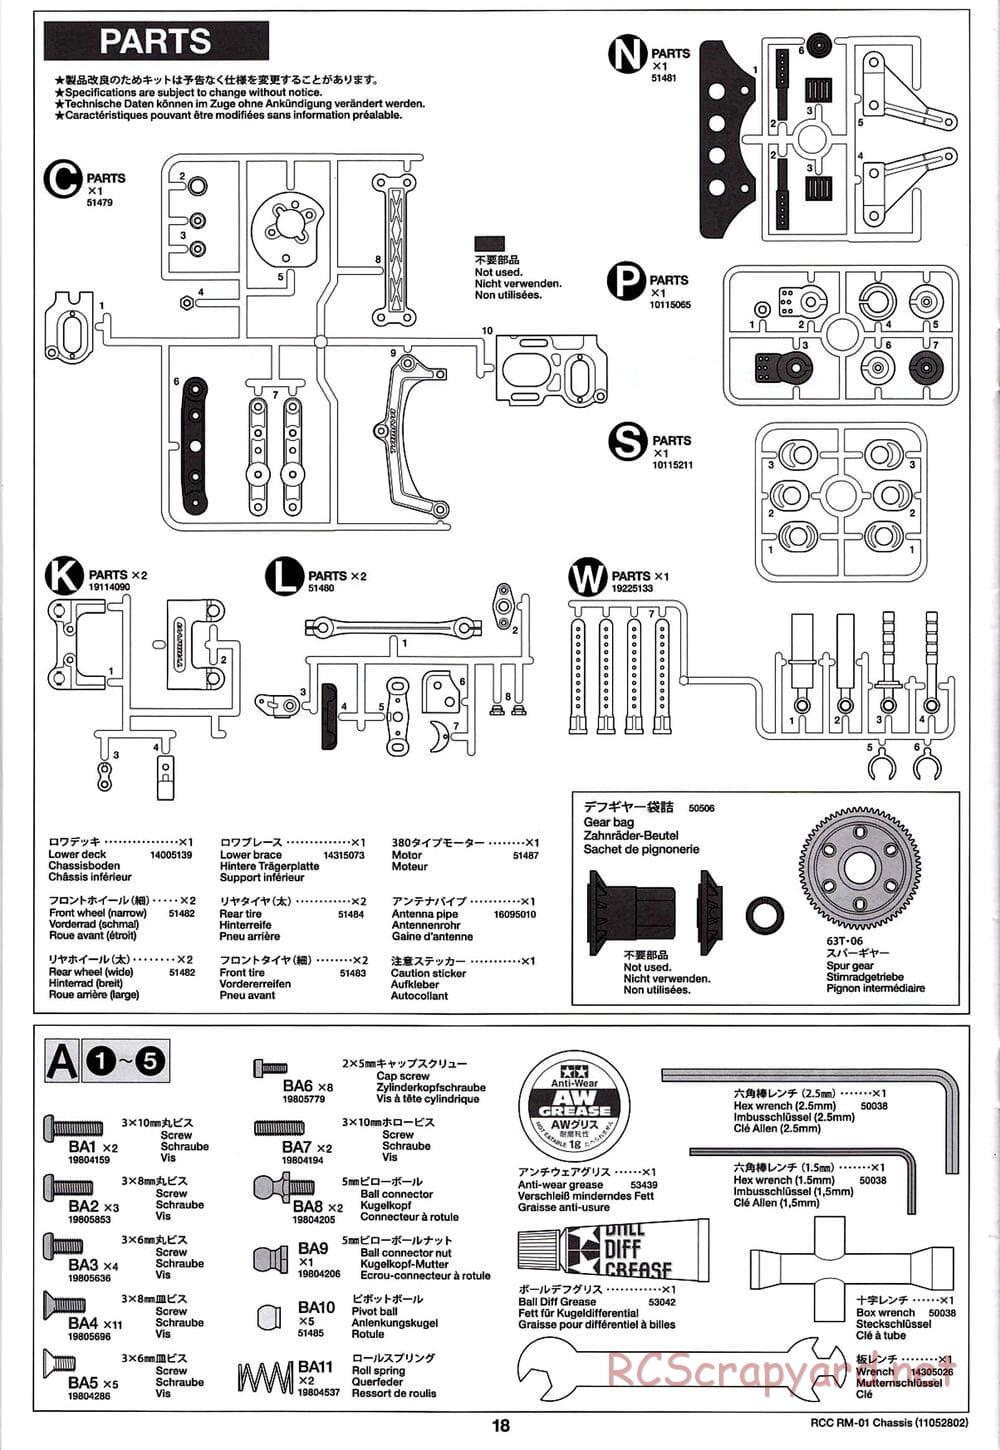 Tamiya - TA04-SS Chassis - Manual - Page 18